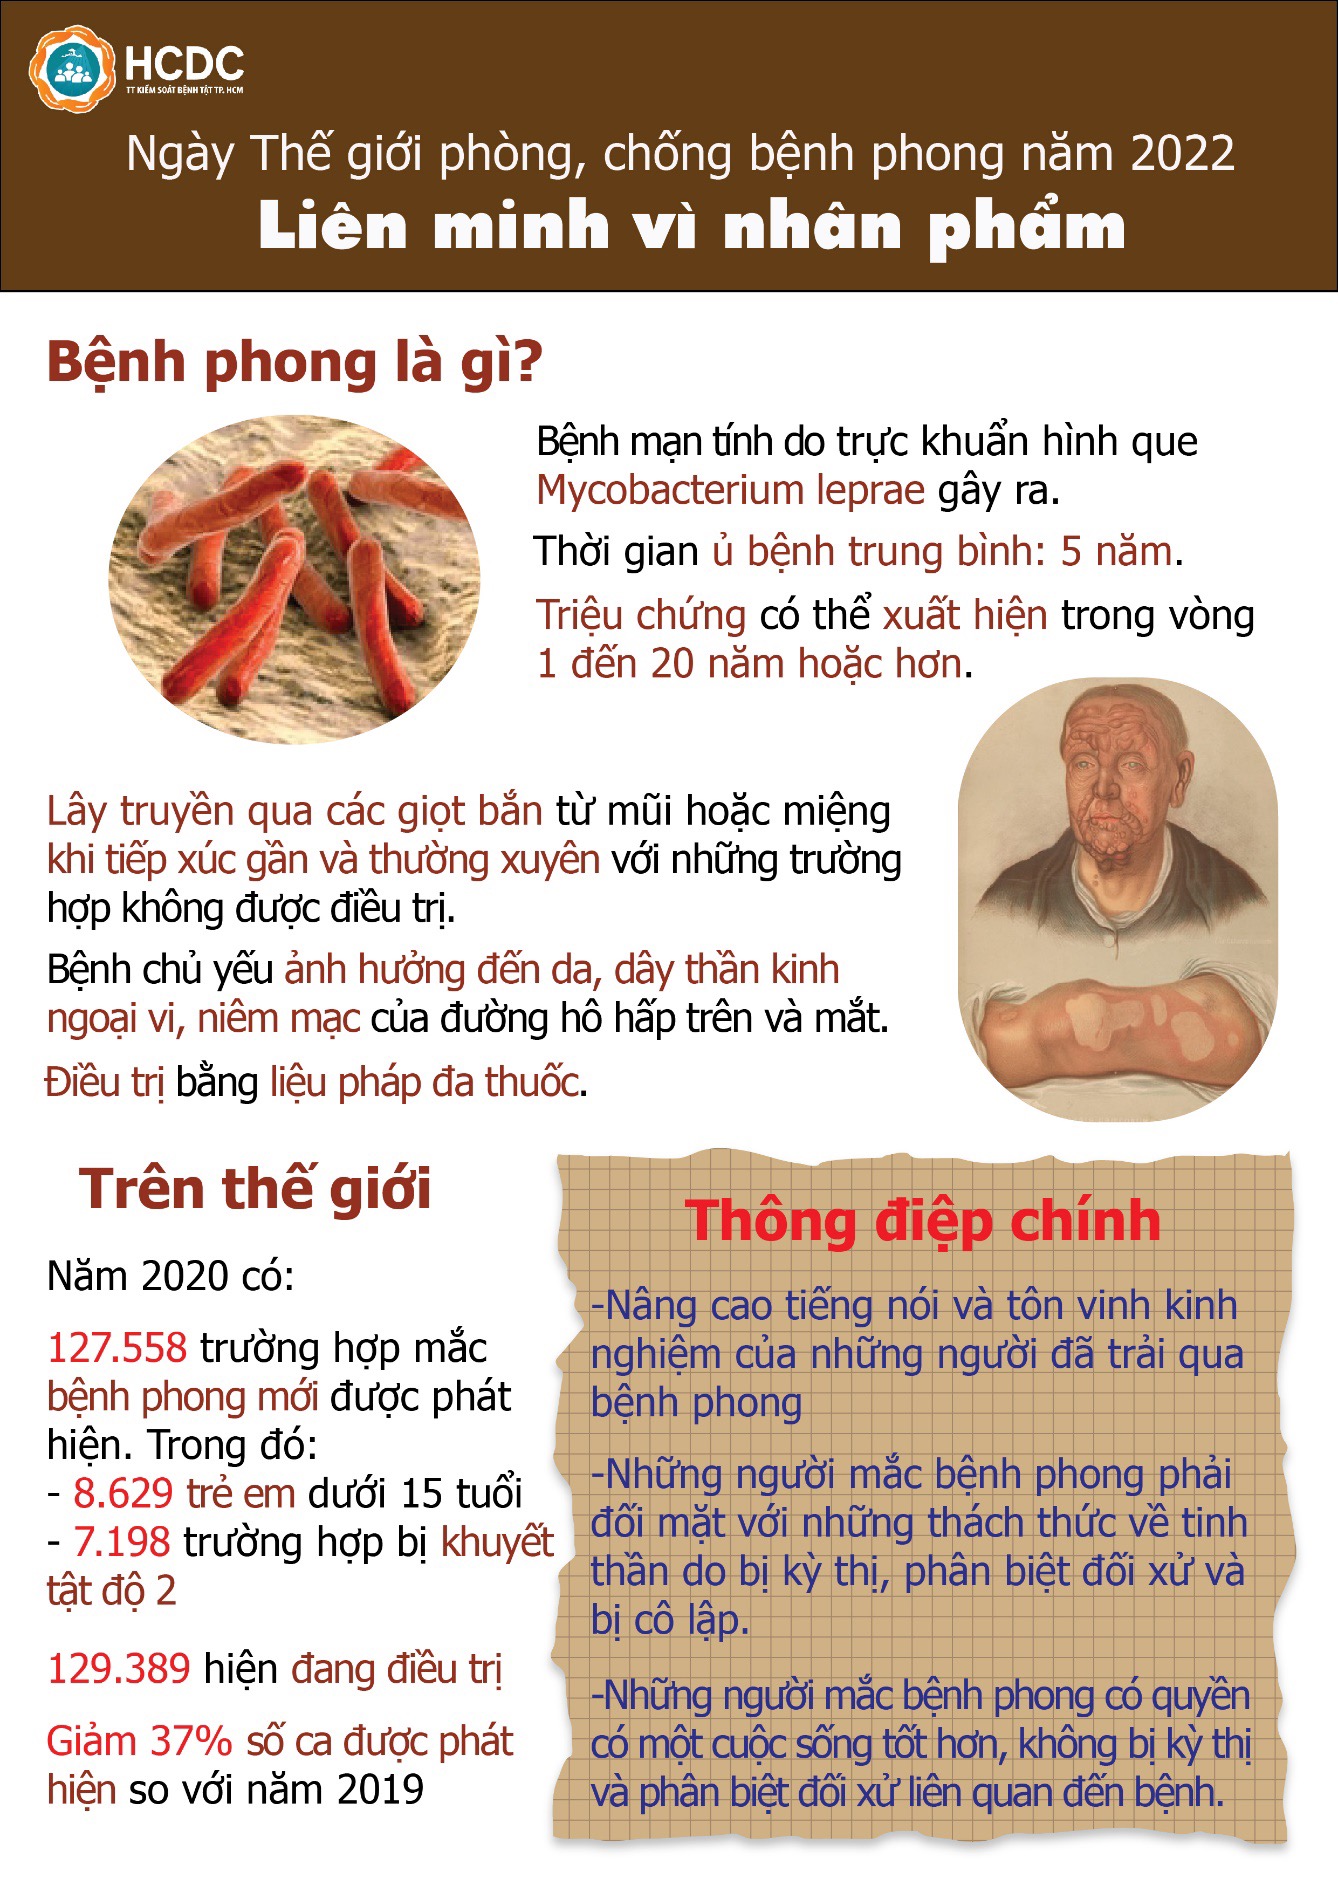 Bệnh phong có phổ biến ở Việt Nam không?